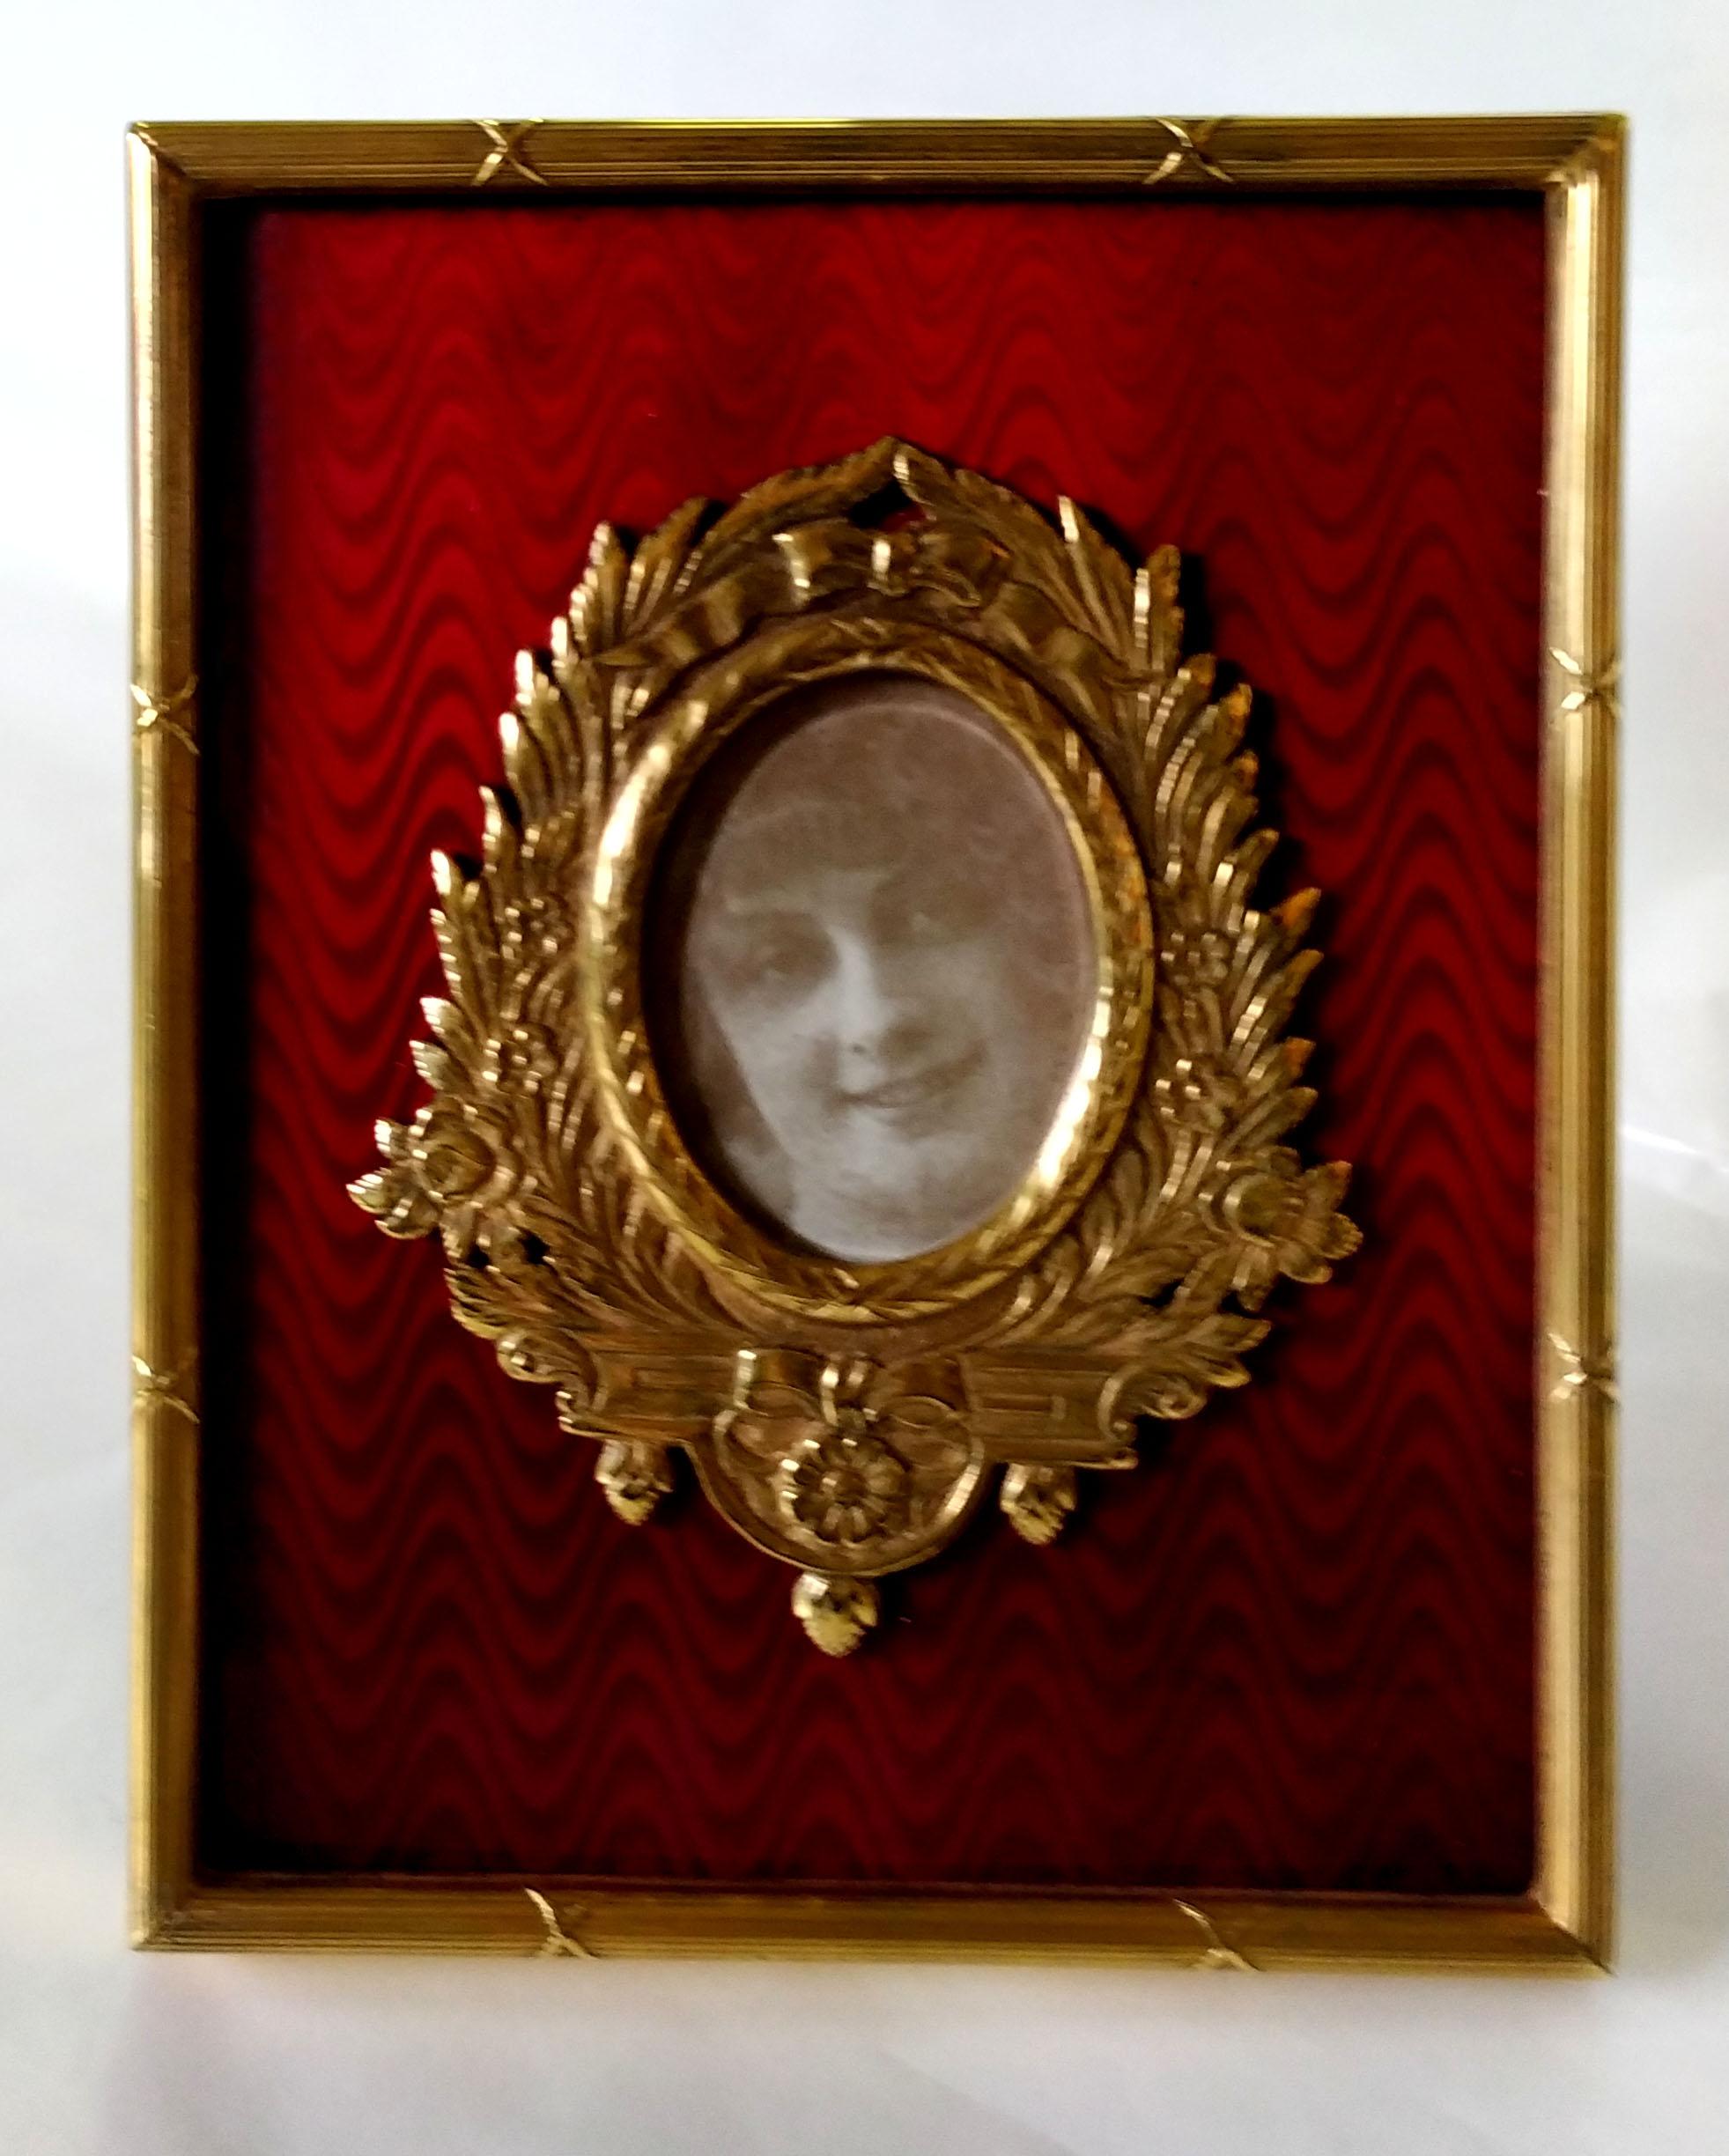 Cadre photo rectangulaire en argent 925/1000 plaqué or avec émail cuit translucide sur guillochè, avec bordure de style Empire français Louis XVI et riche ornementation autour de l'ovale de cm. 3 x cm. 3 x 4. Dimensions extérieures cm. 10.2 x 12.7.